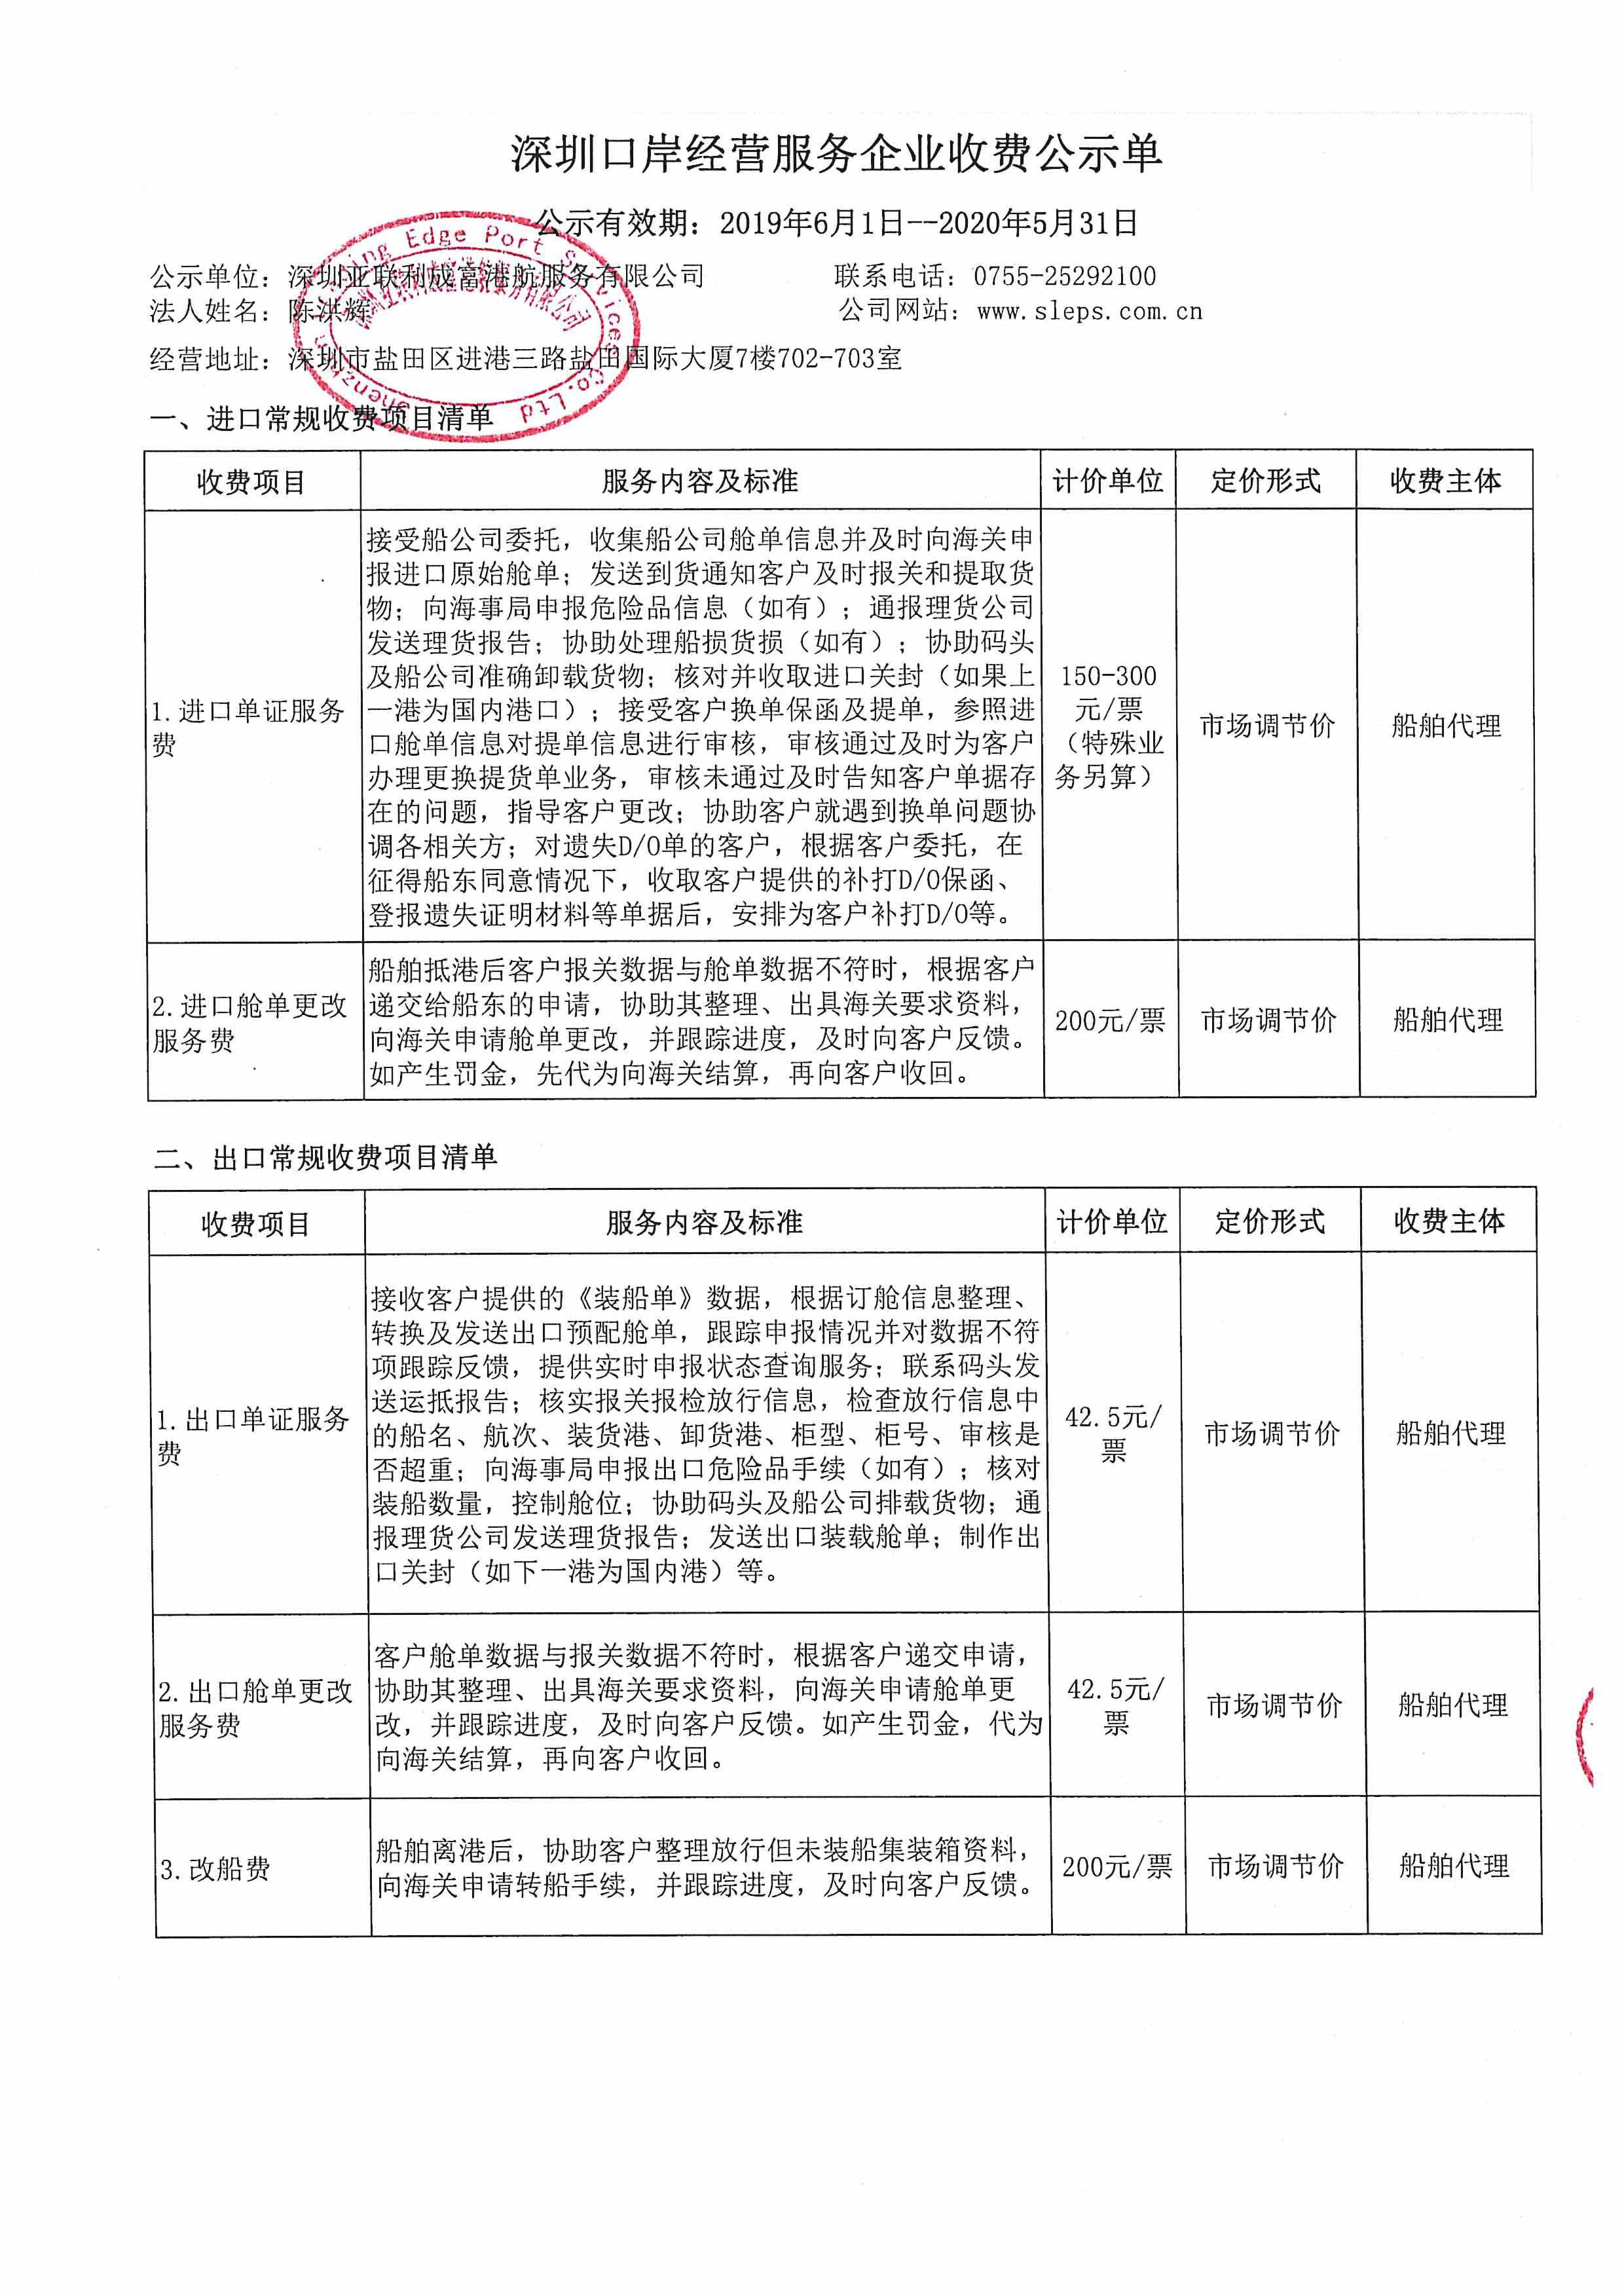 深圳亚联利成富港航服务有限公司收费目录清单_1.jpg